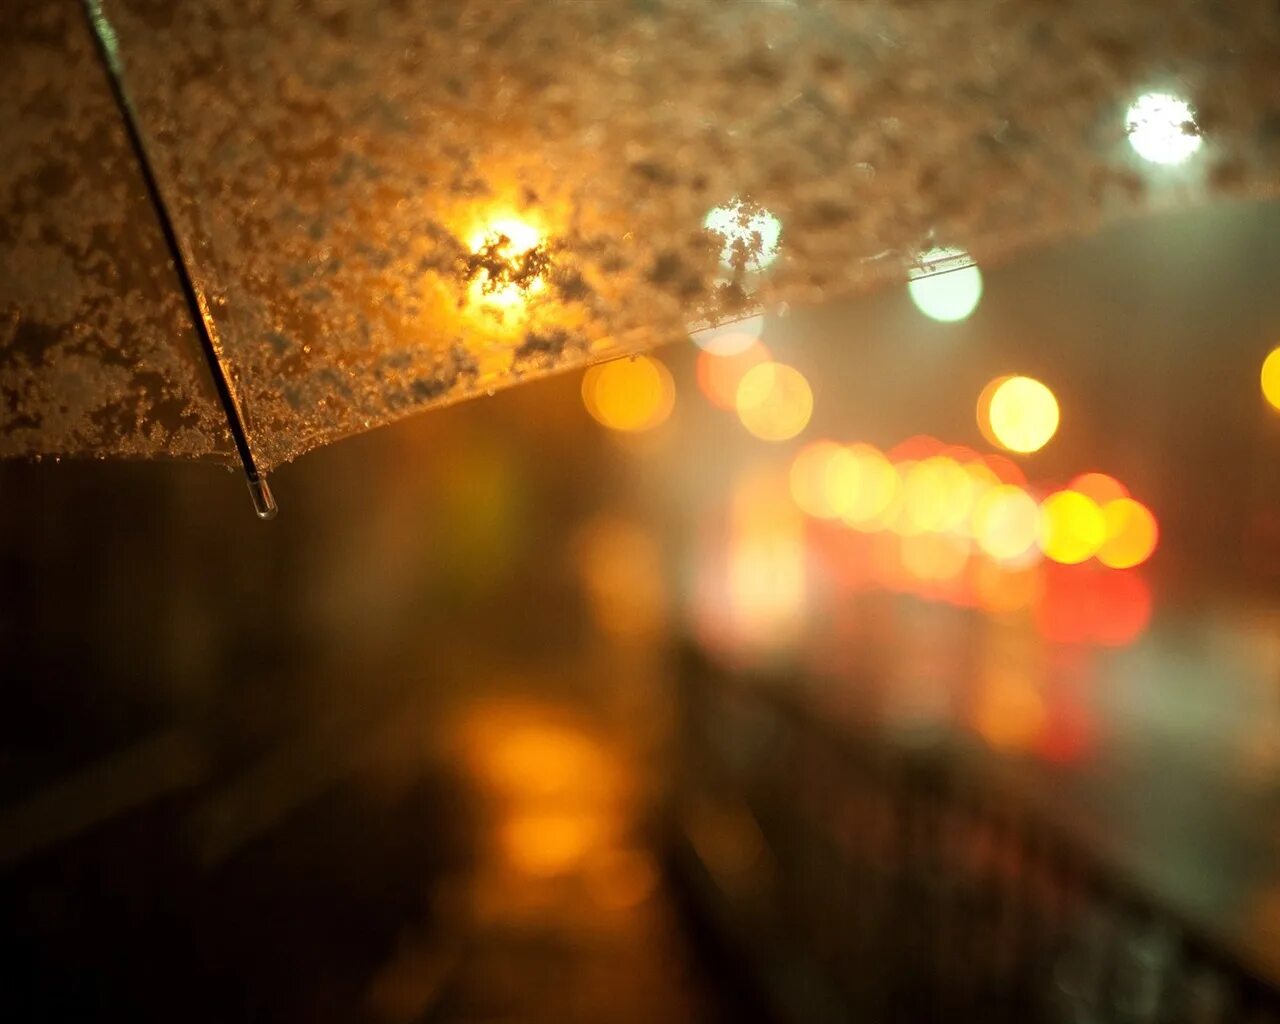 Дождь. "Дождливый вечер". Осень дождь вечер. Солнечные блики на стекле. Light shots